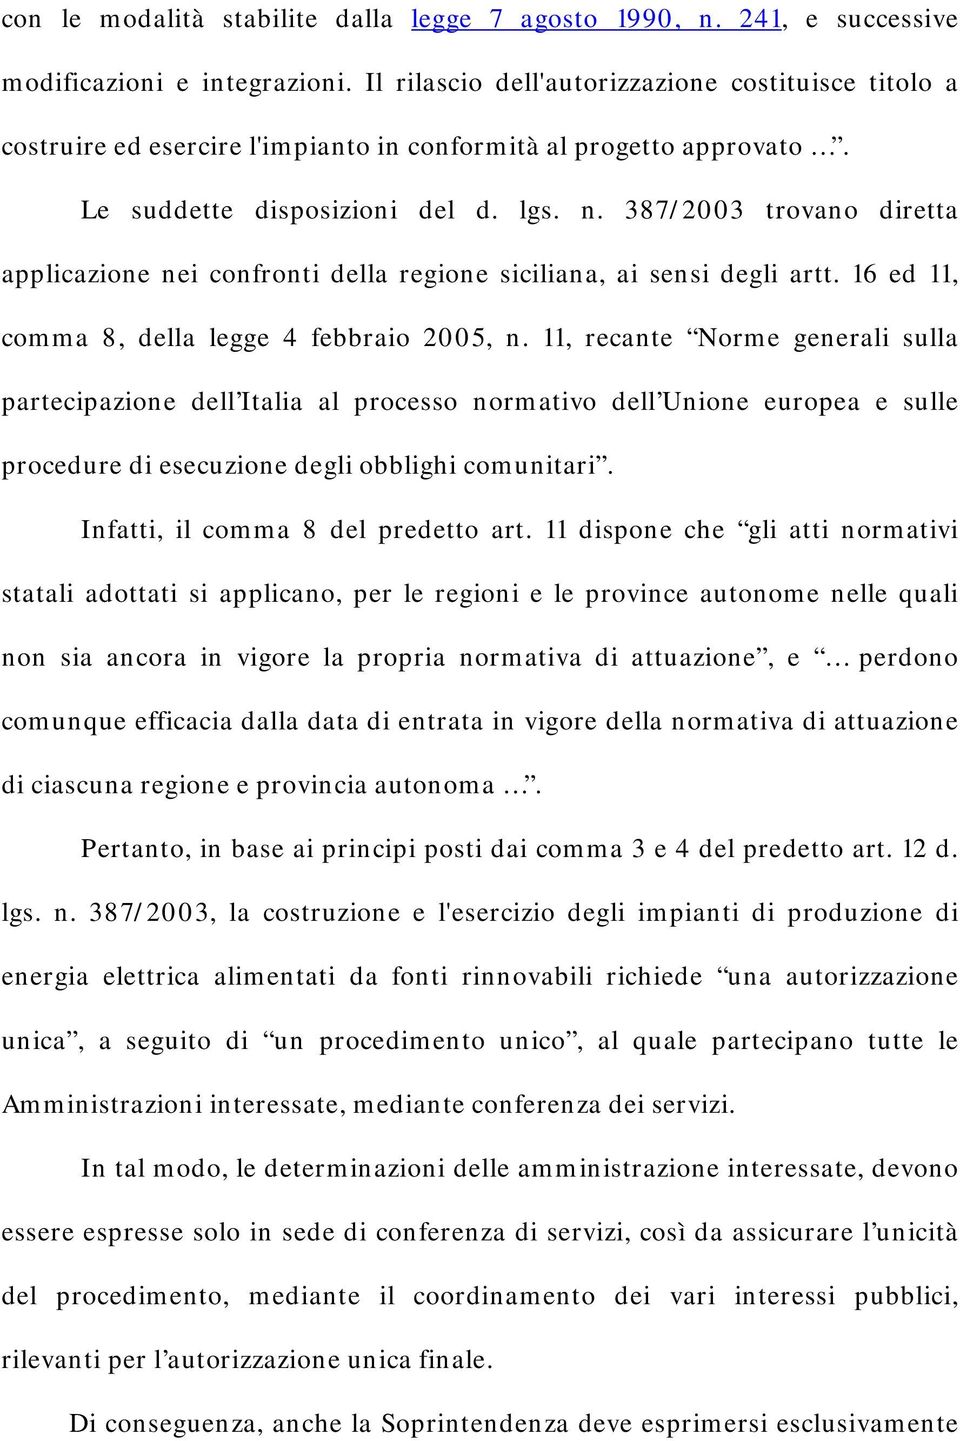 387/2003 trovano diretta applicazione nei confronti della regione siciliana, ai sensi degli artt. 16 ed 11, comma 8, della legge 4 febbraio 2005, n.